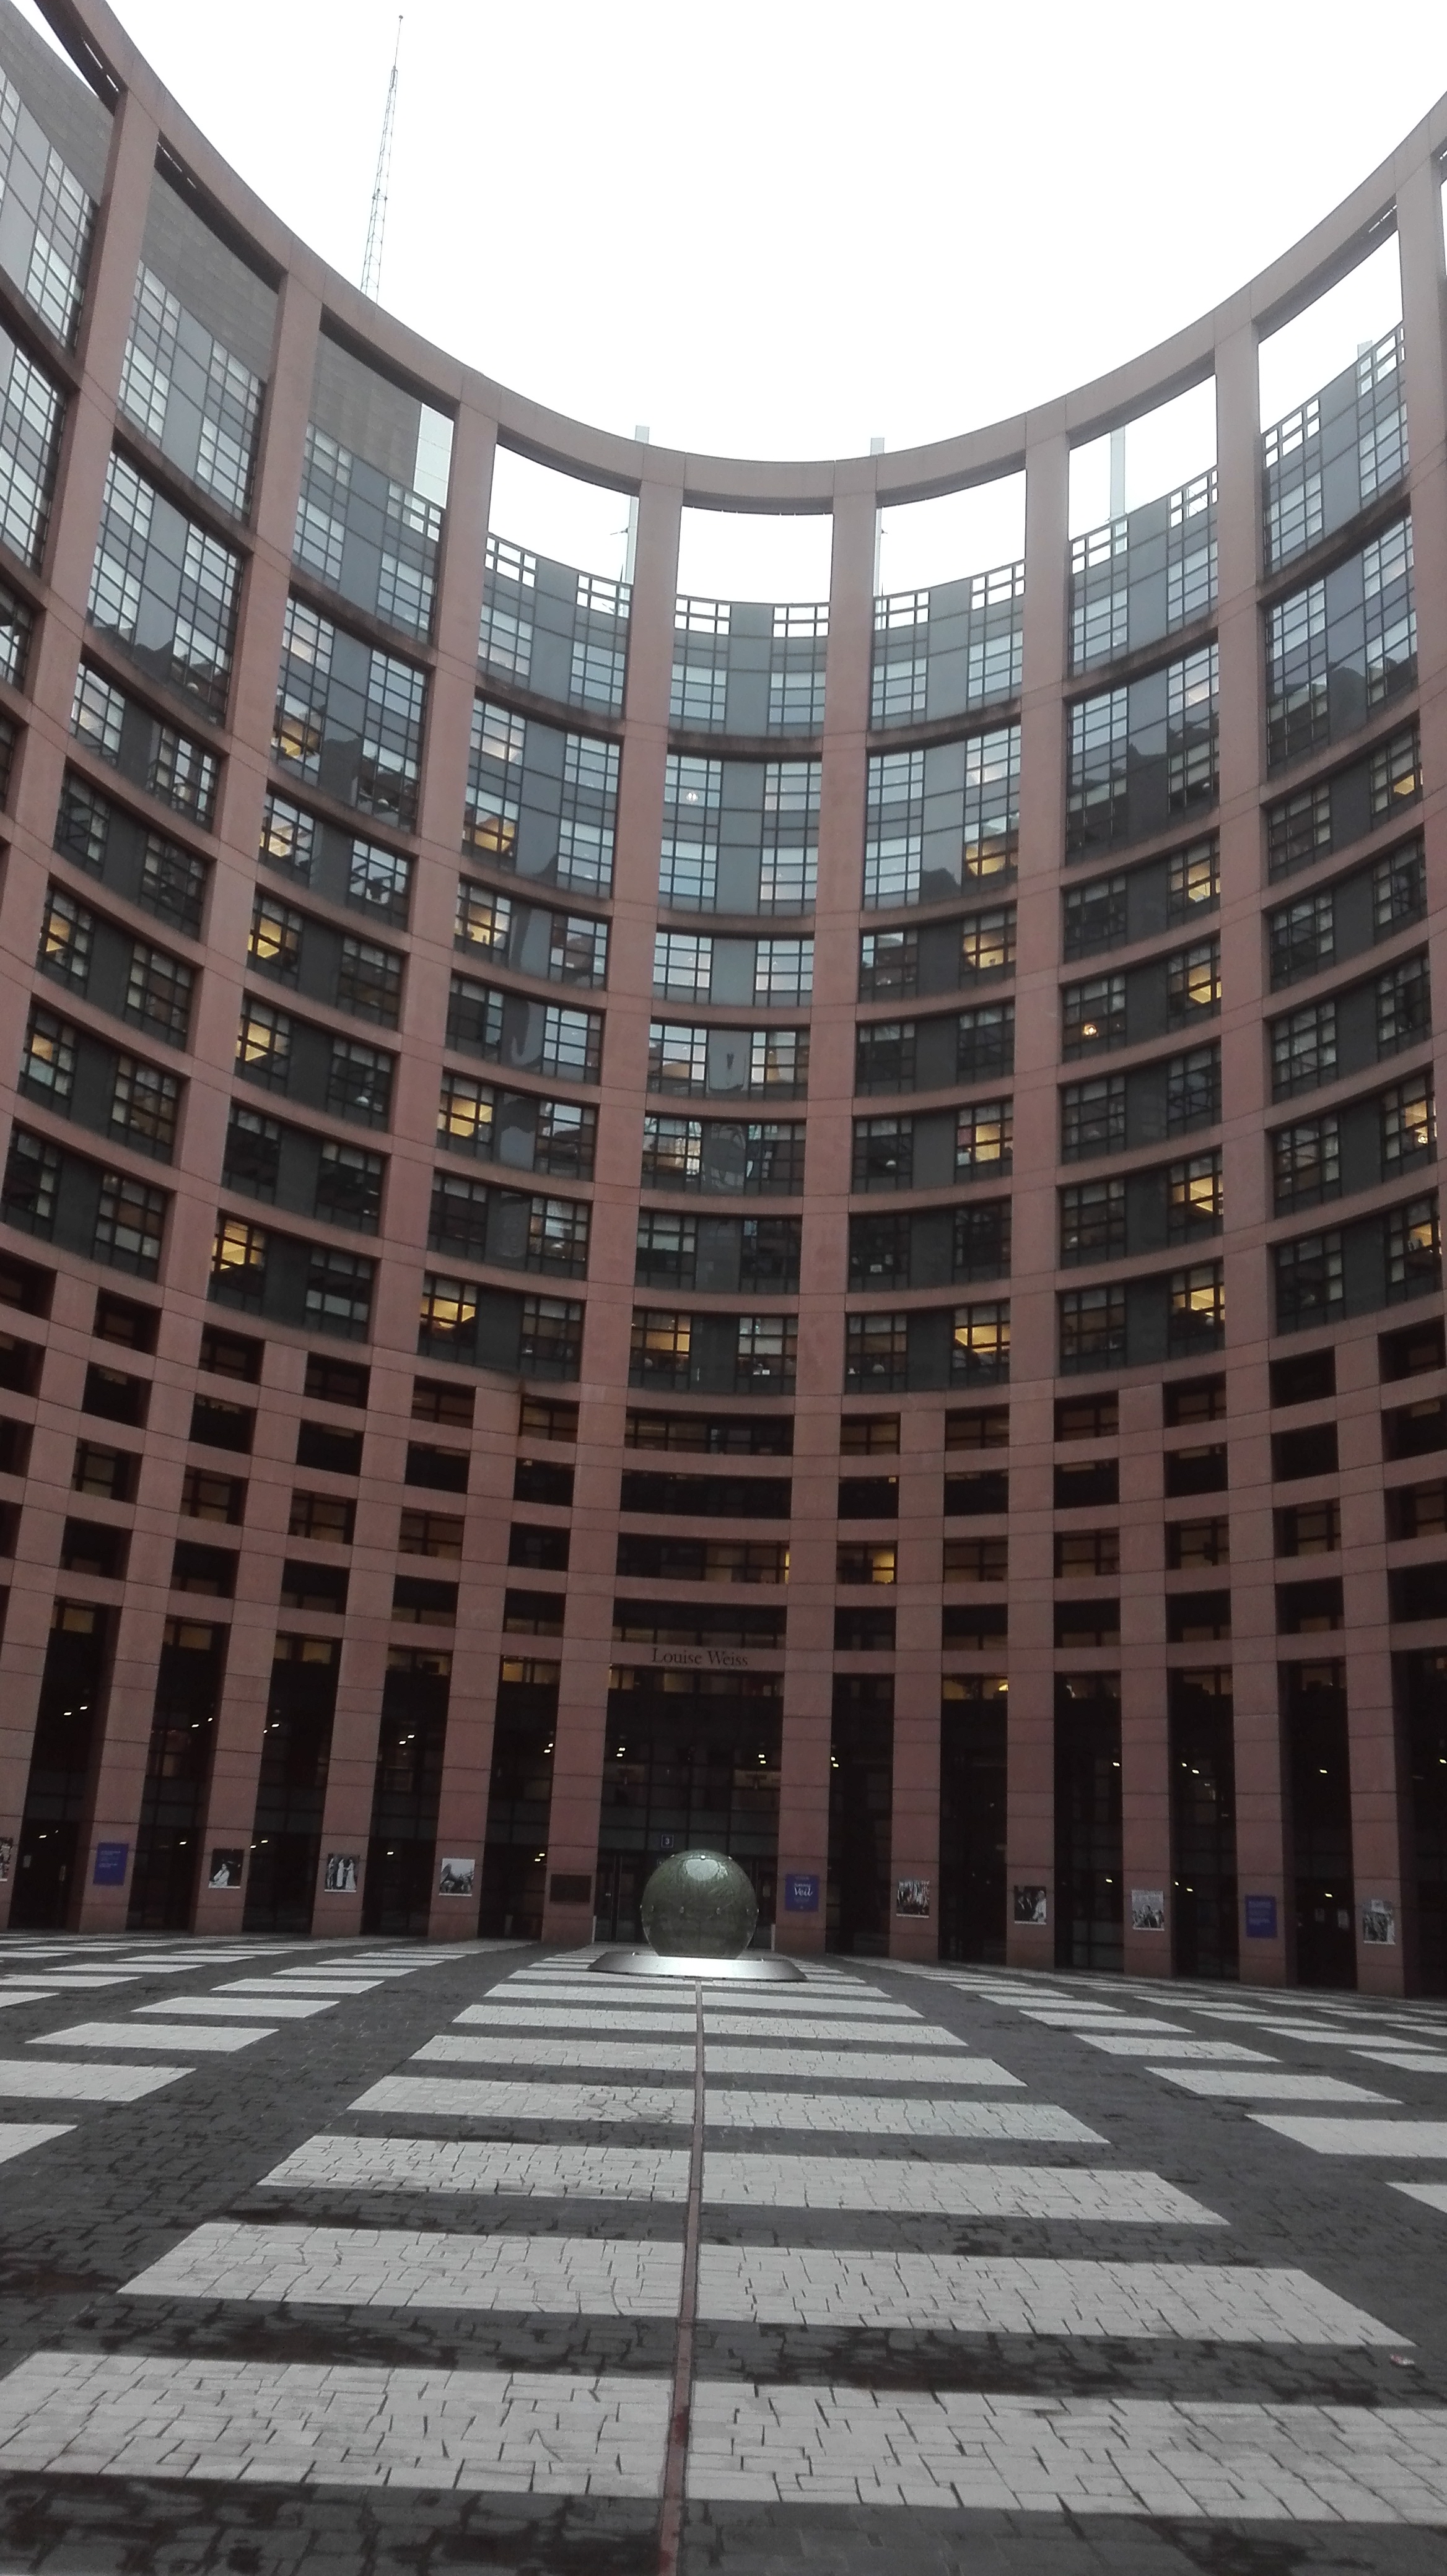 EU-Parlamentshof